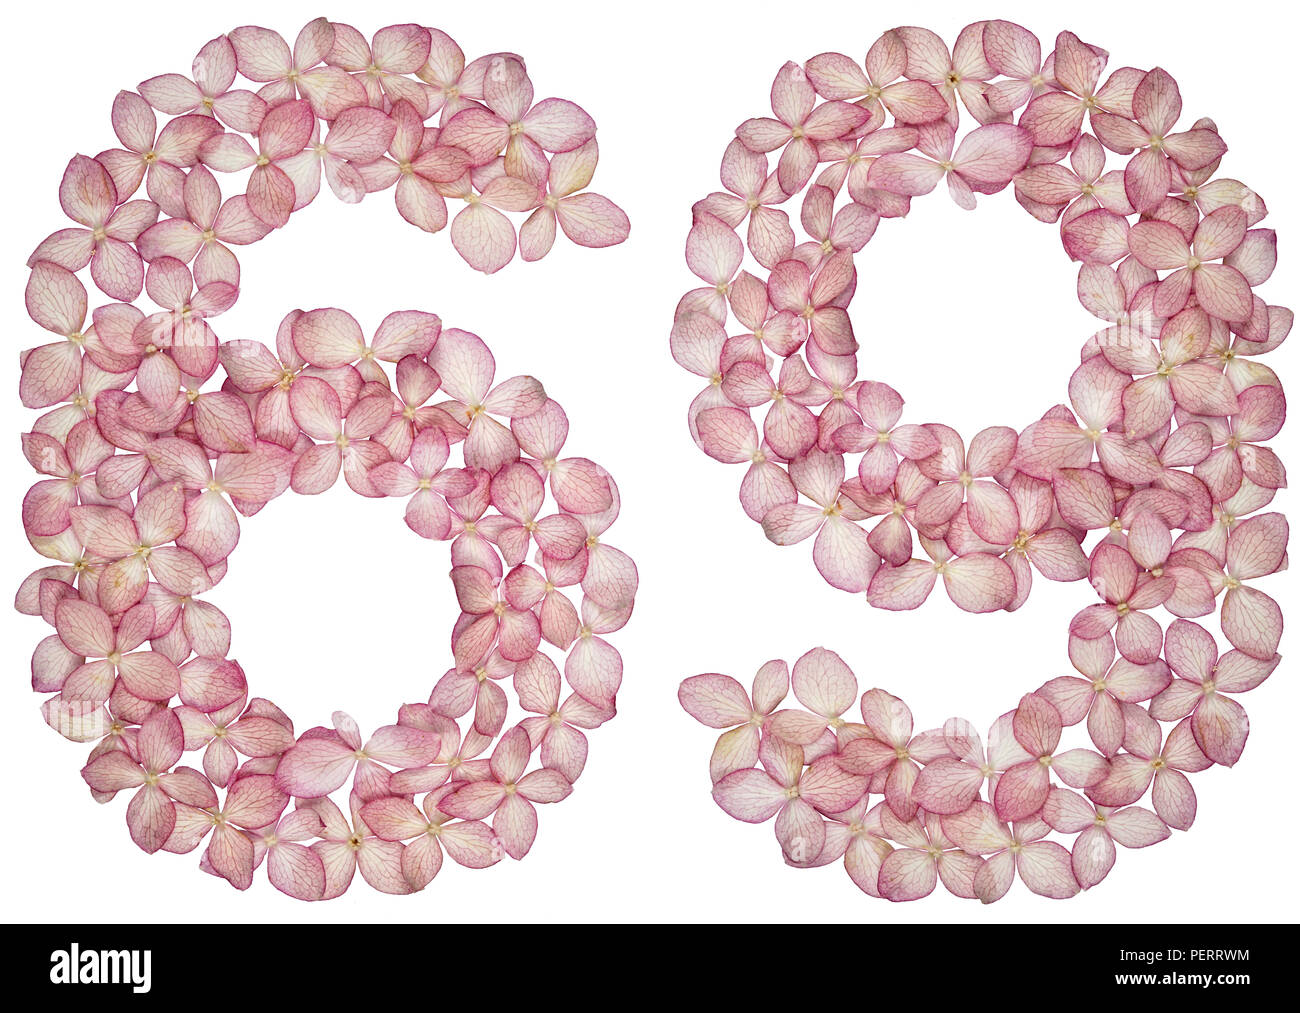 Numero arabo 69, sessanta nove, dai fiori di ortensie, isolato su sfondo bianco Foto Stock